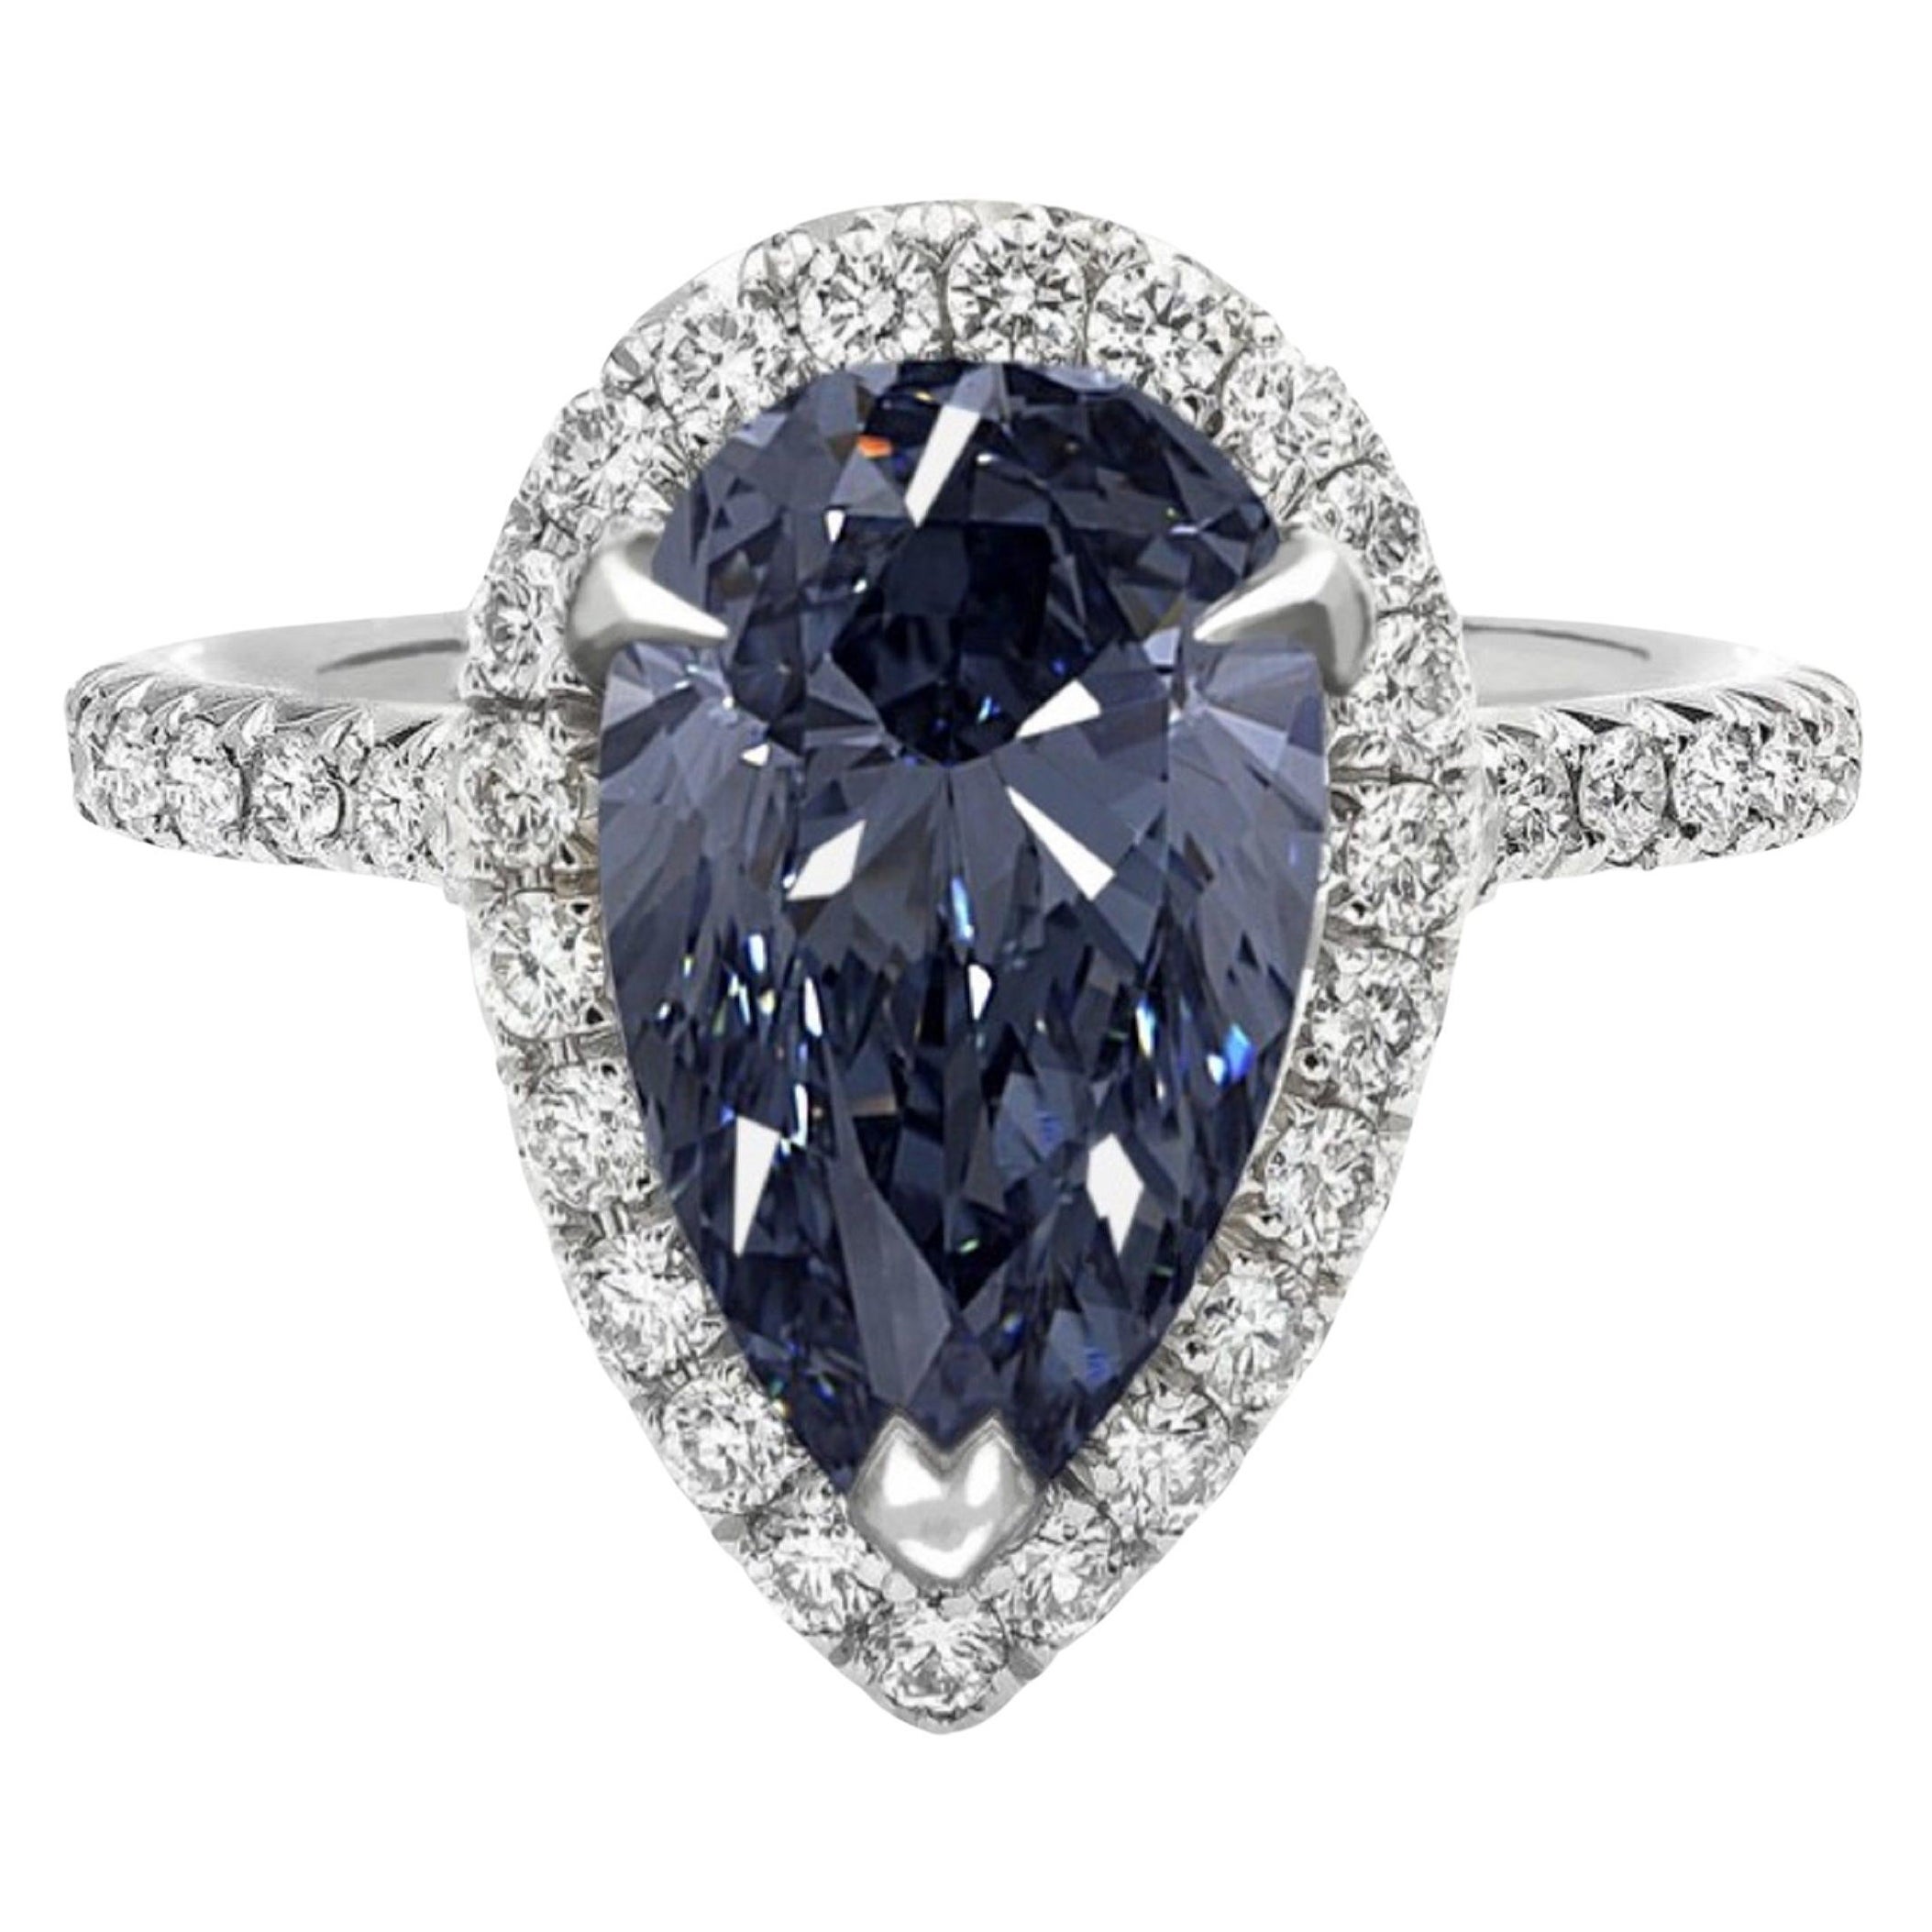 Exceptionnelle bague fantaisie en diamant bleu intense de 1 carat certifié GIA